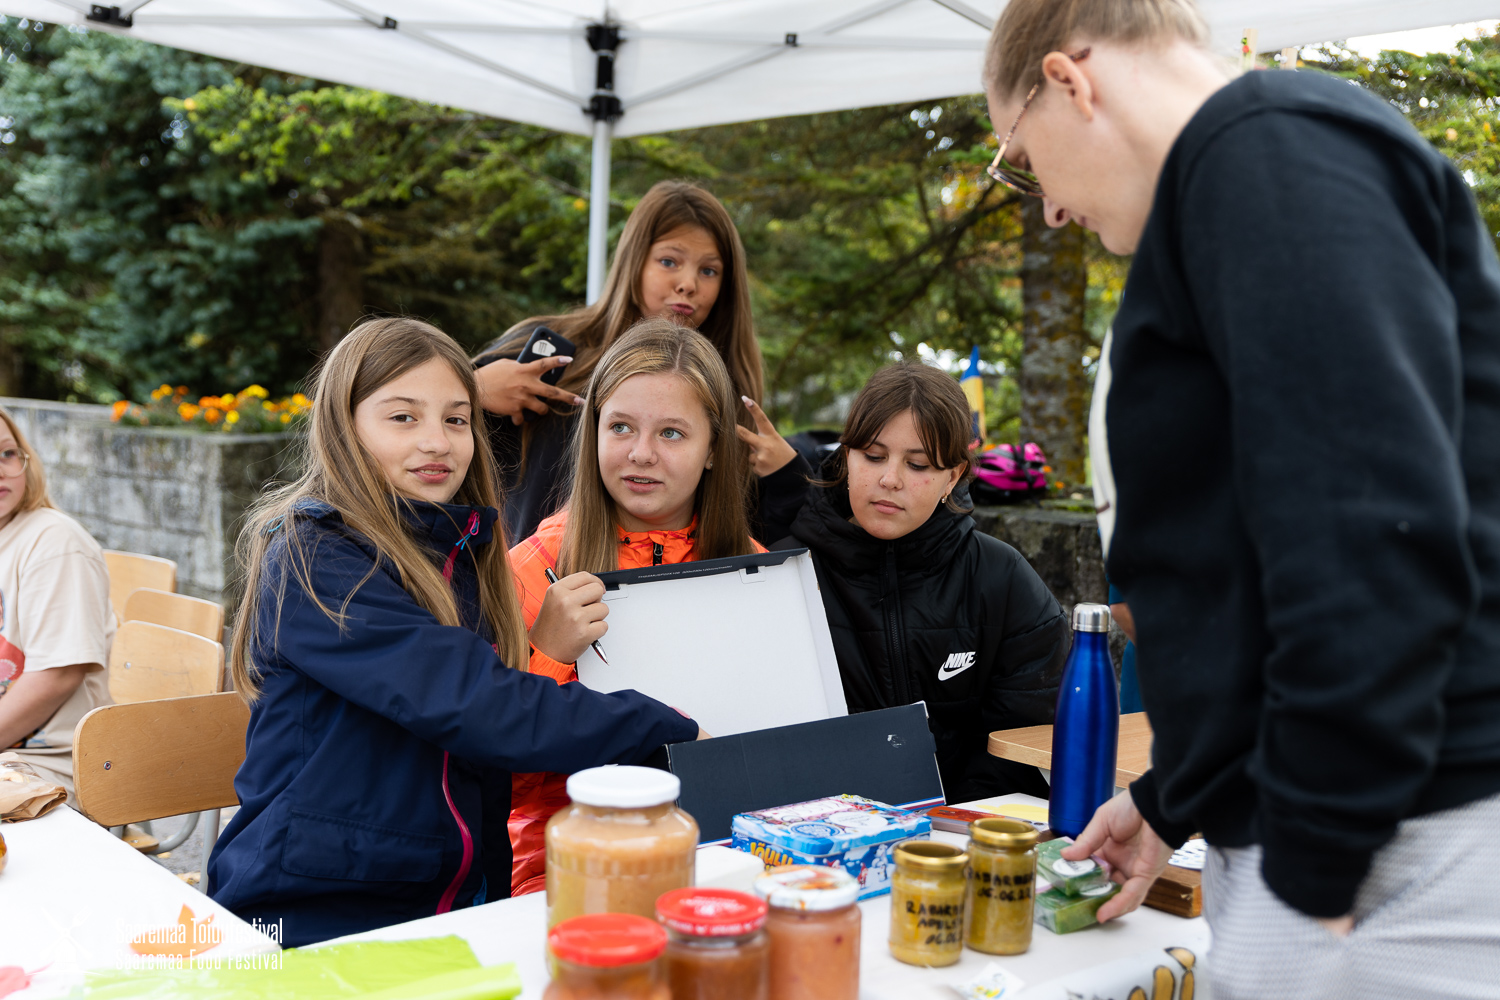 Oma müügiletiga olid väljas ka õpilased / Gert Lutter / Saaremaa Toidufestival